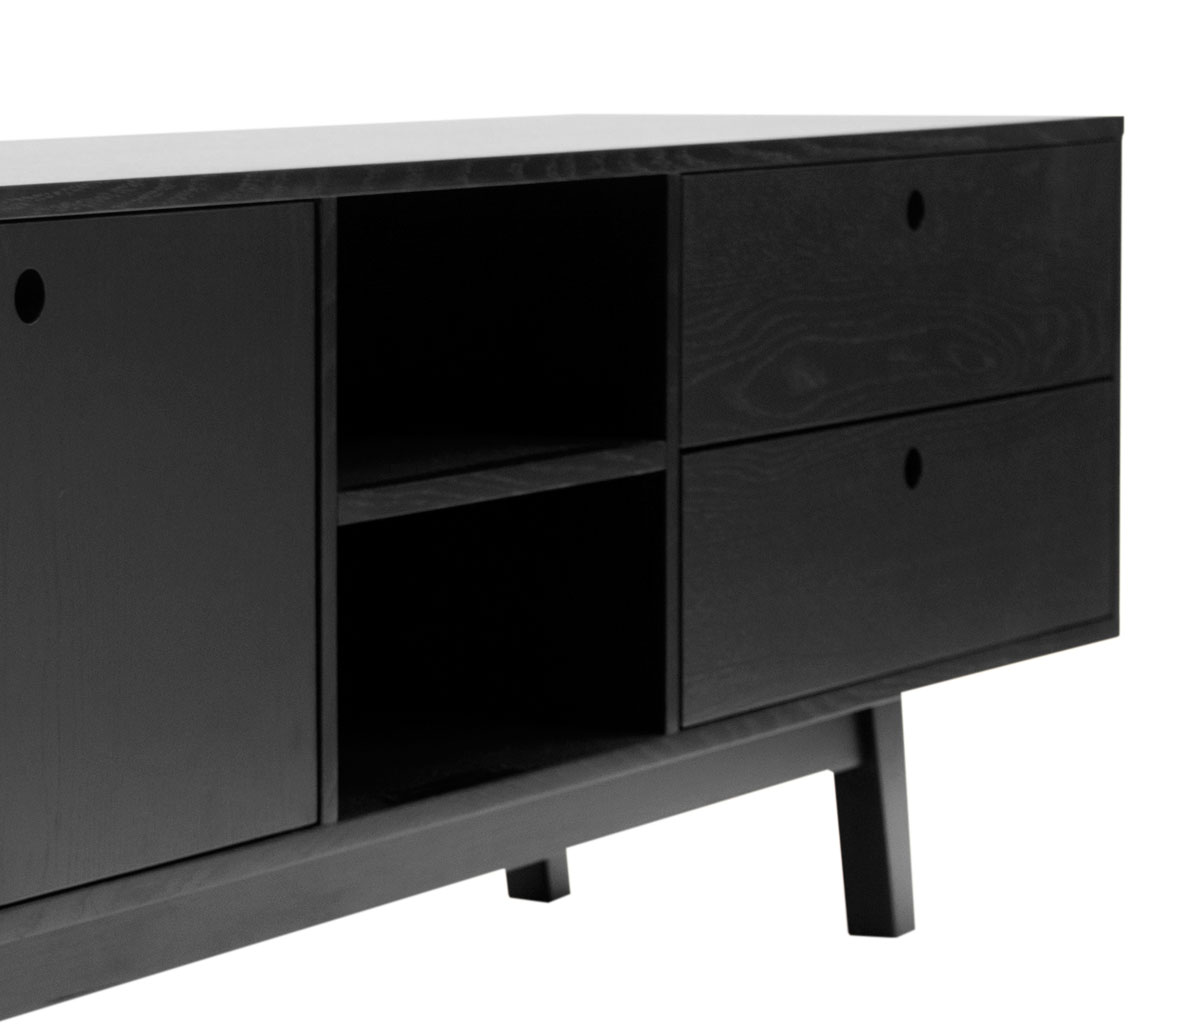 Mueble para tv Evo 200cm - Negro